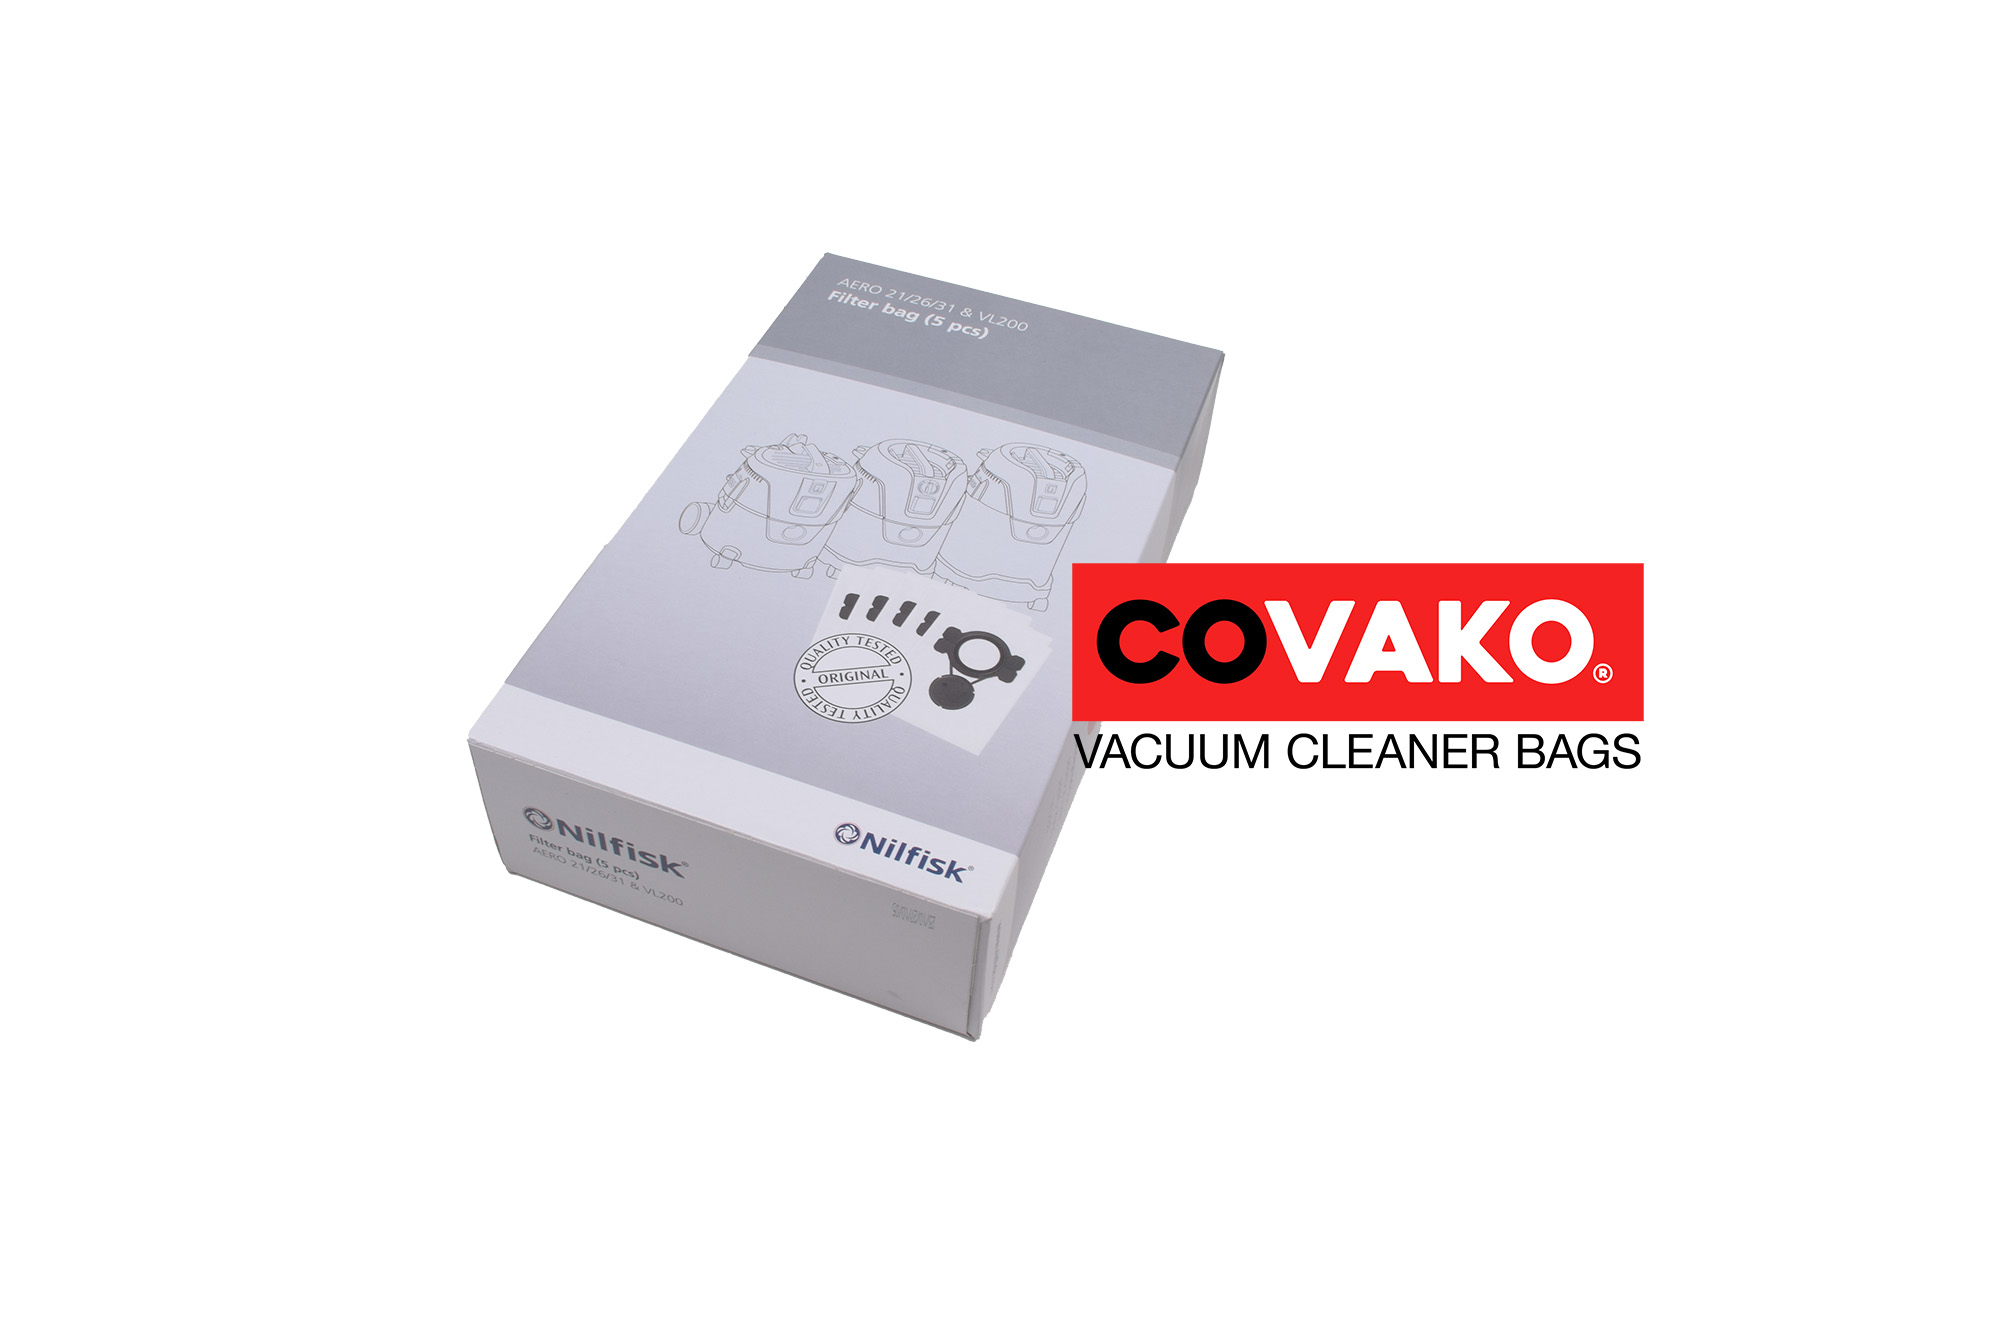 Makita VC 3011 L / Synthesis - Makita vacuum cleaner bags